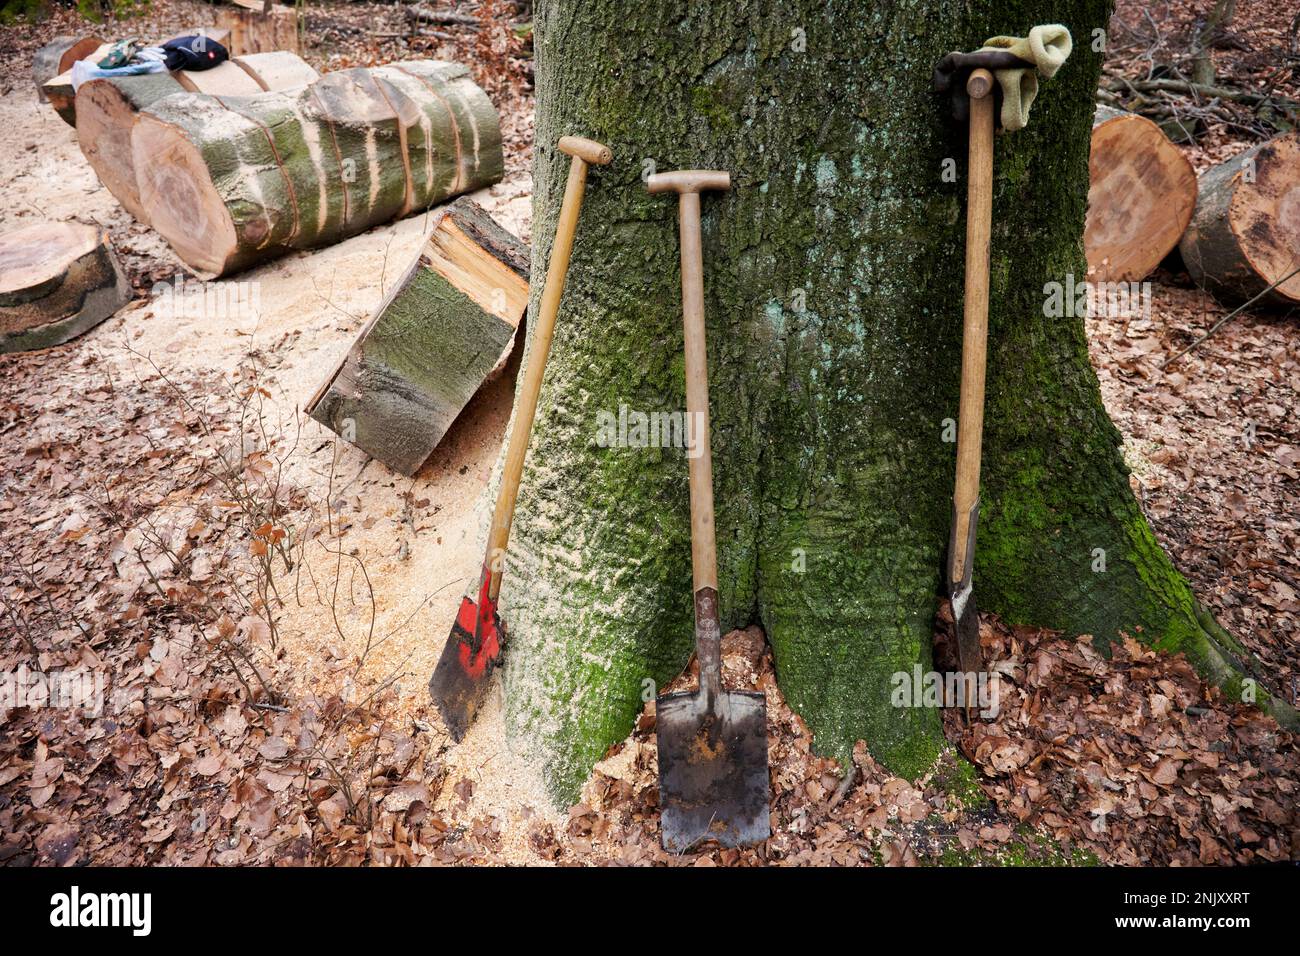 An einem Baumstamm stehen drei Spaten, Im Hintergrund sind Baumscheiben zu sehen die von Fällarbeiten stammen und Sägespähne. Stock Photo